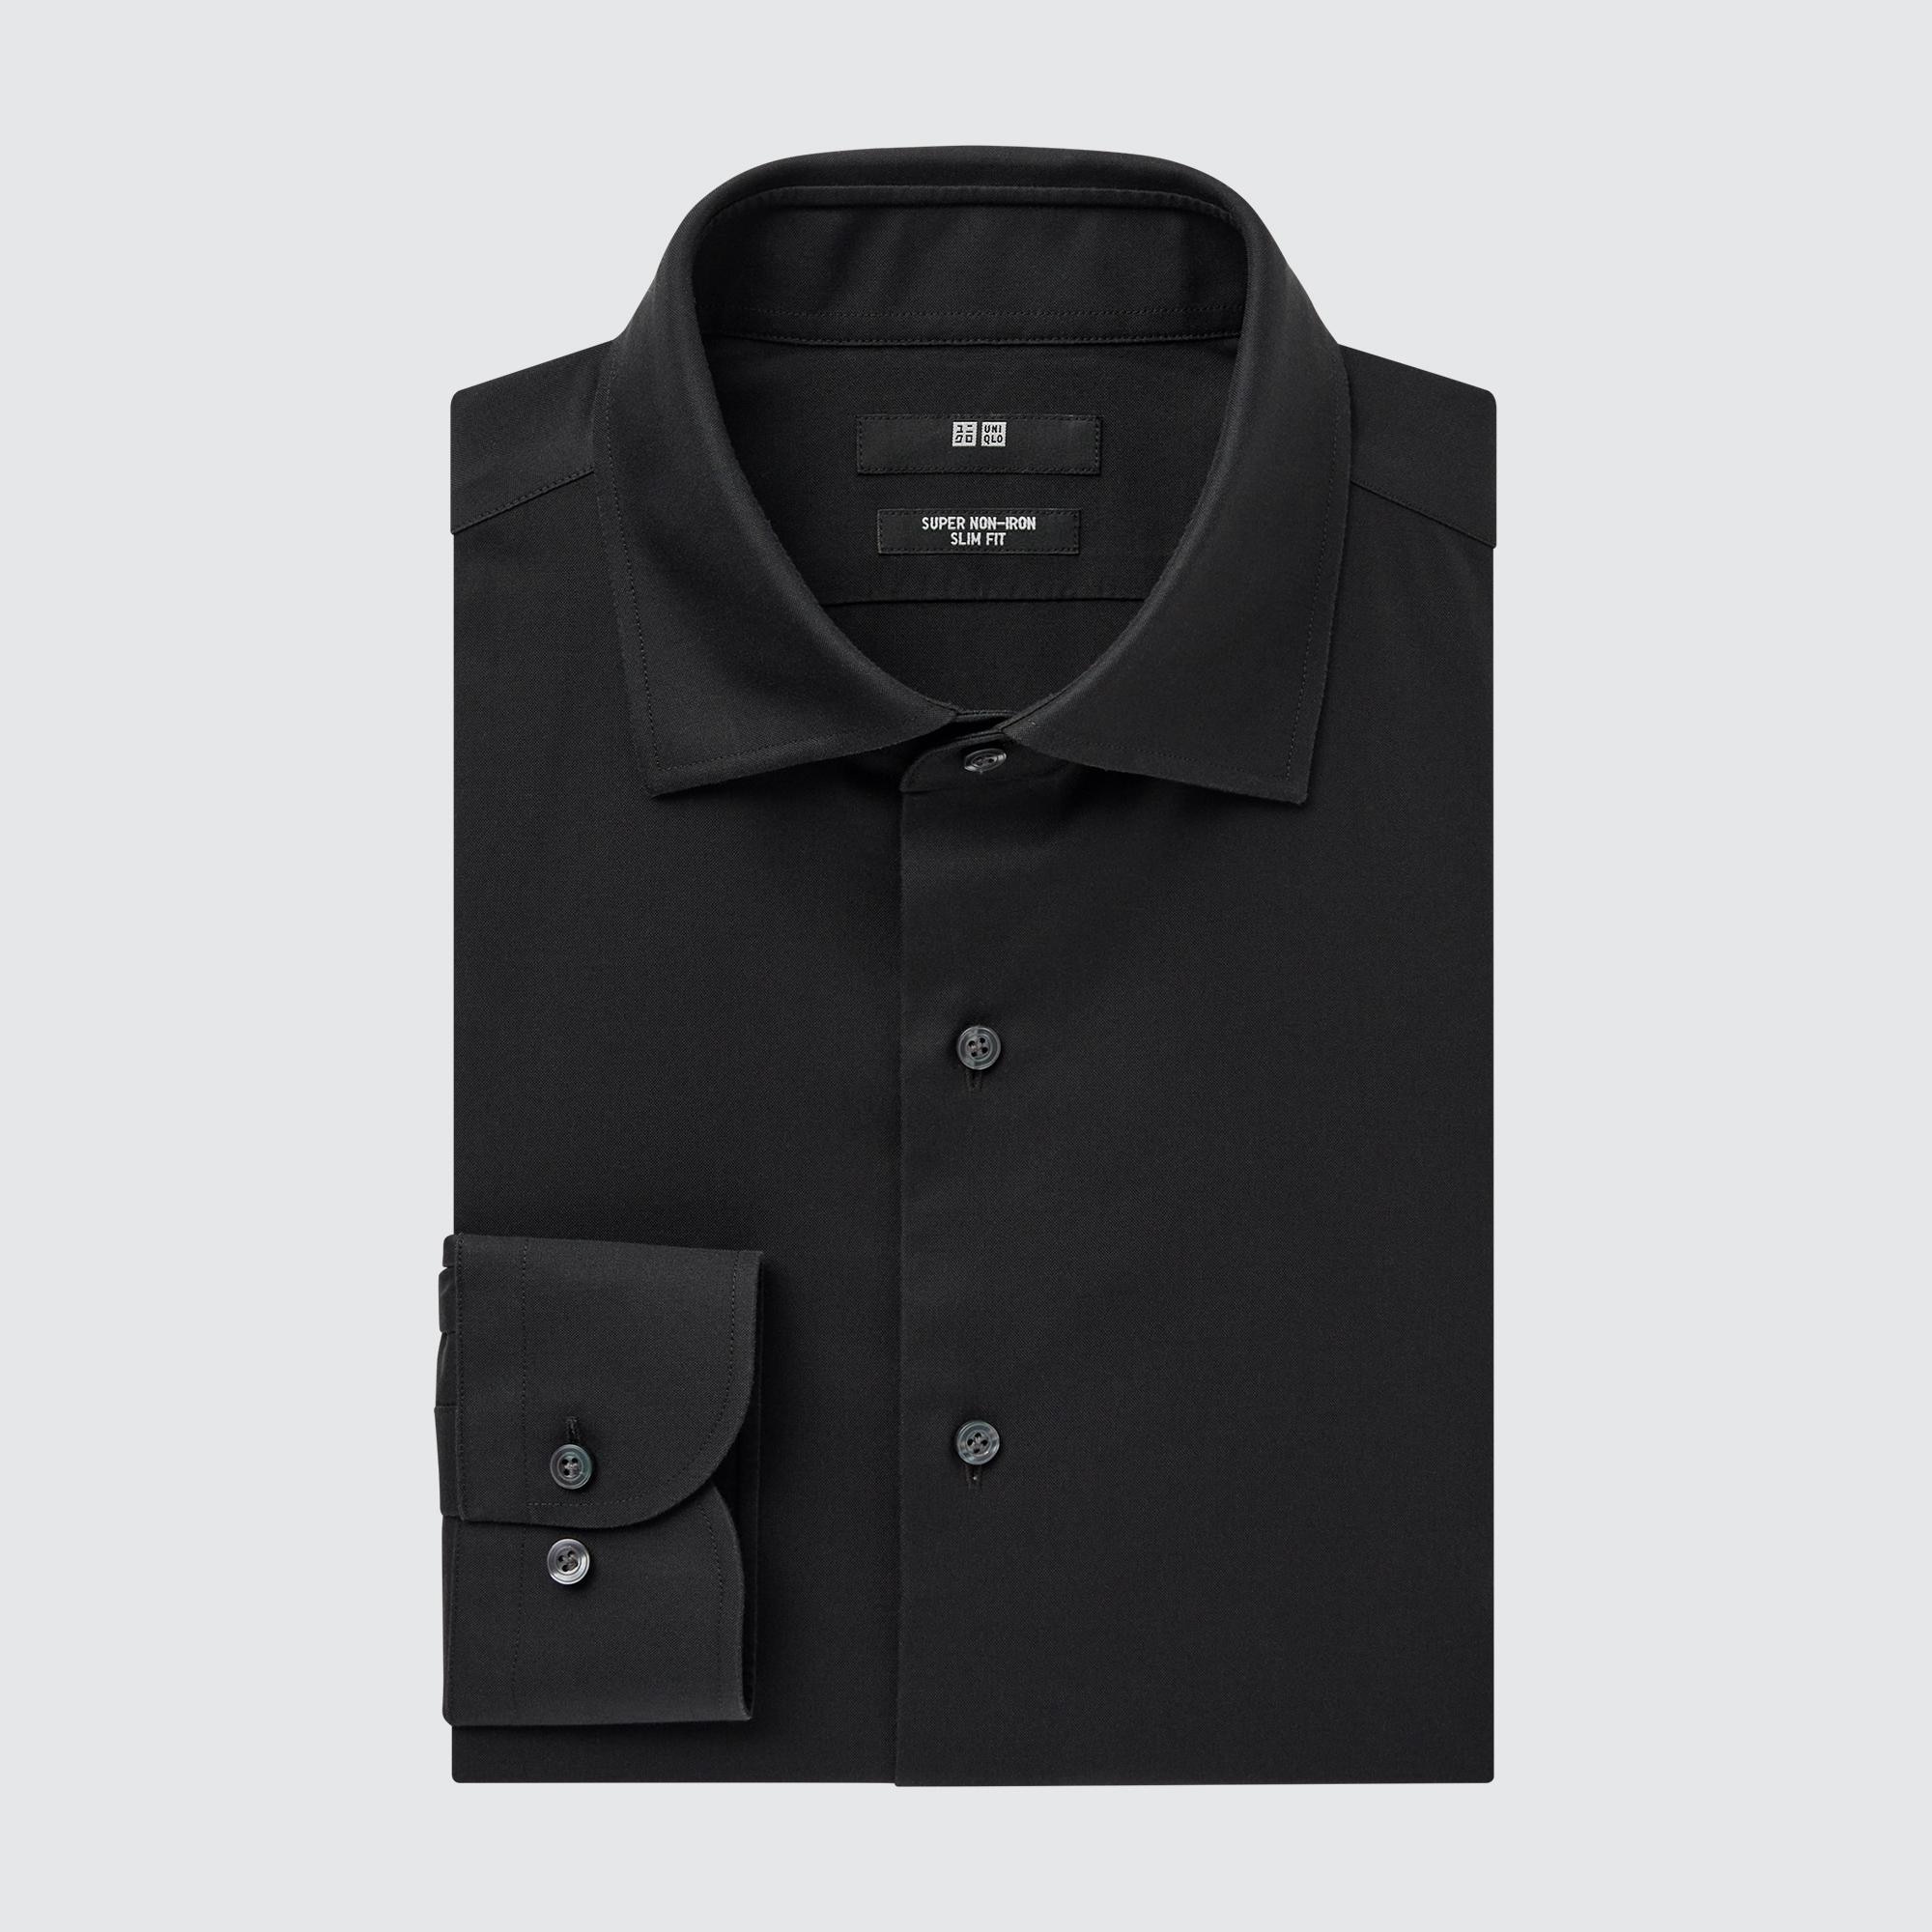 Рубашка мужская UNIQLO 456592COL09 черная XL (доставка из-за рубежа)